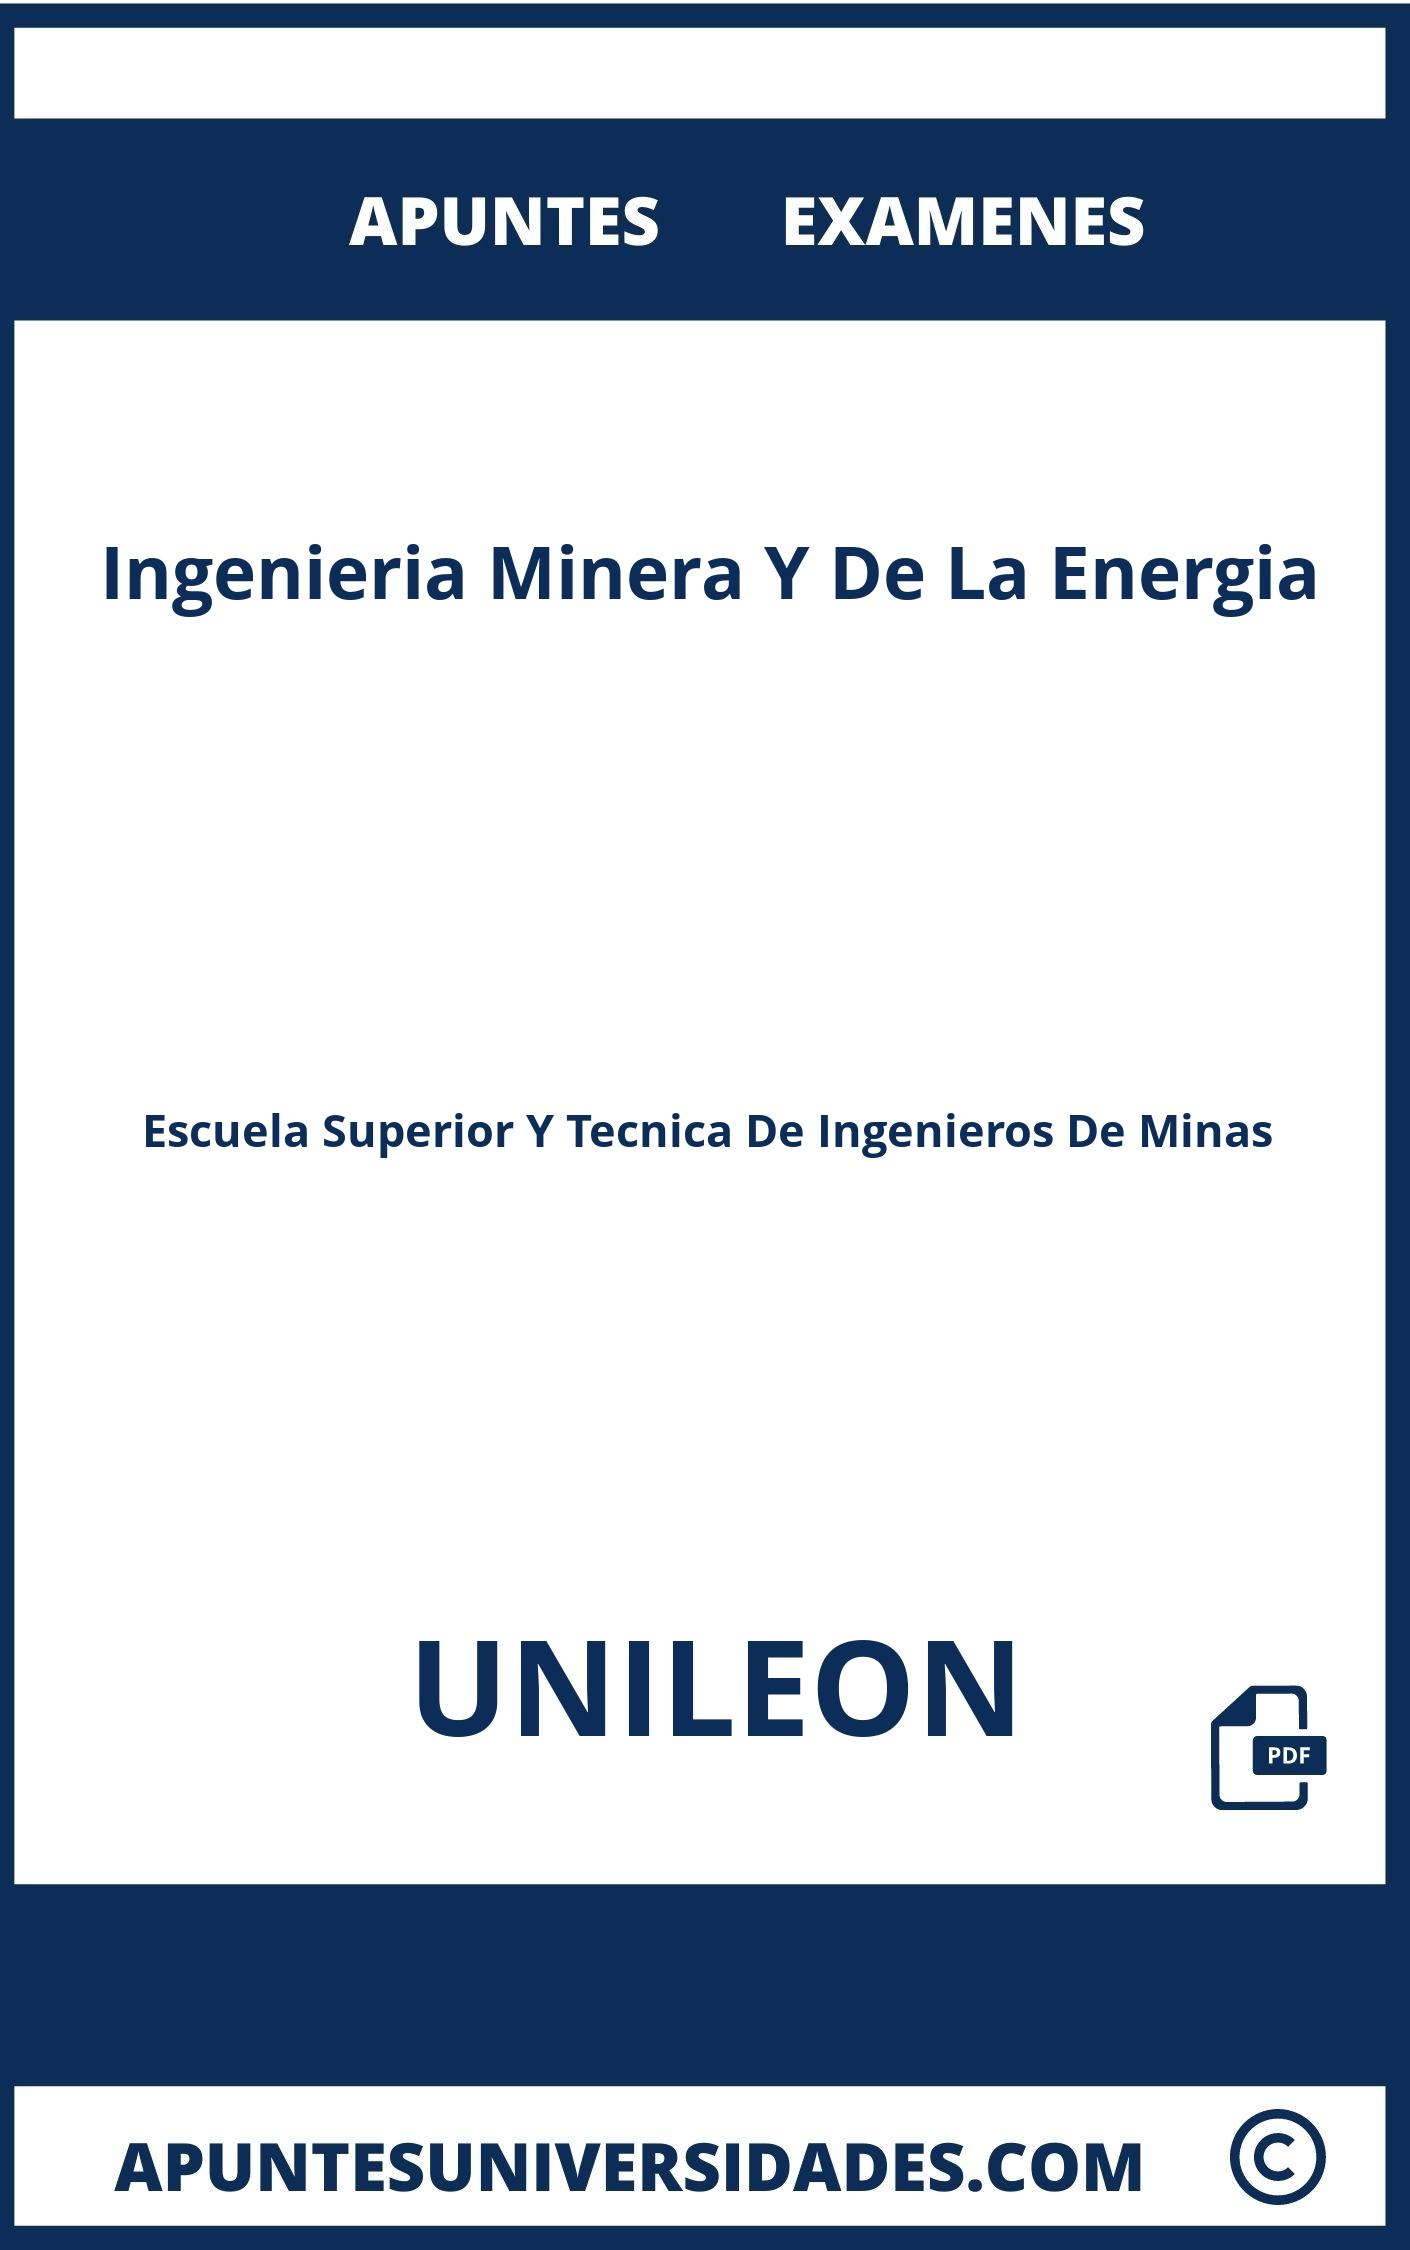 Apuntes y Examenes Ingenieria Minera Y De La Energia UNILEON